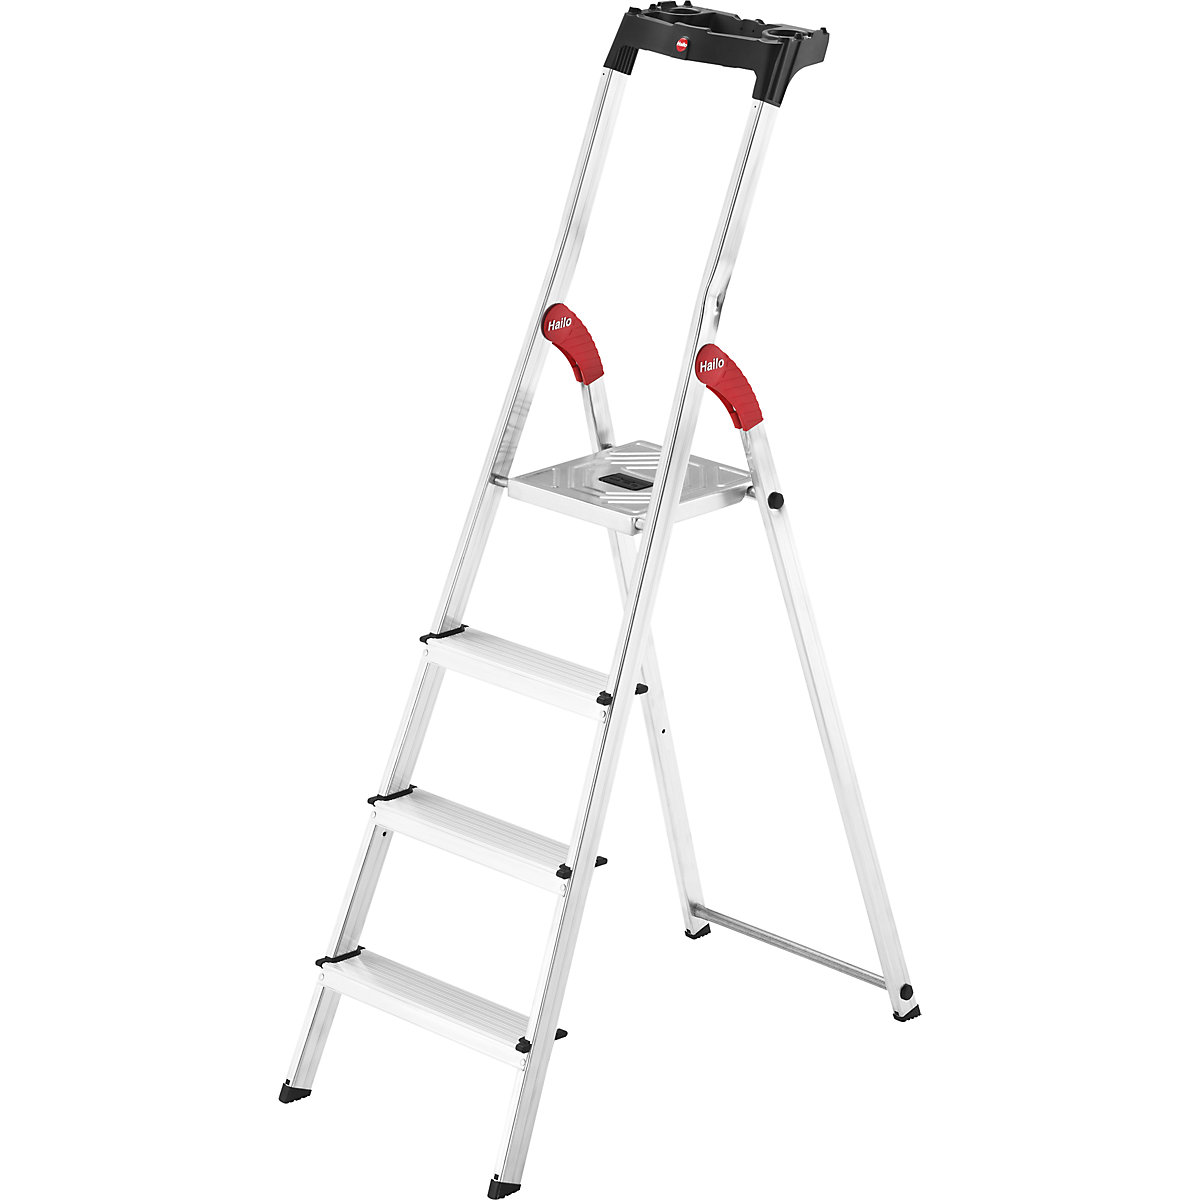 Hliníkový stojací rebrík so stupňami StandardLine L60 – Hailo, nosnosť 150 kg, 4 stupne-8